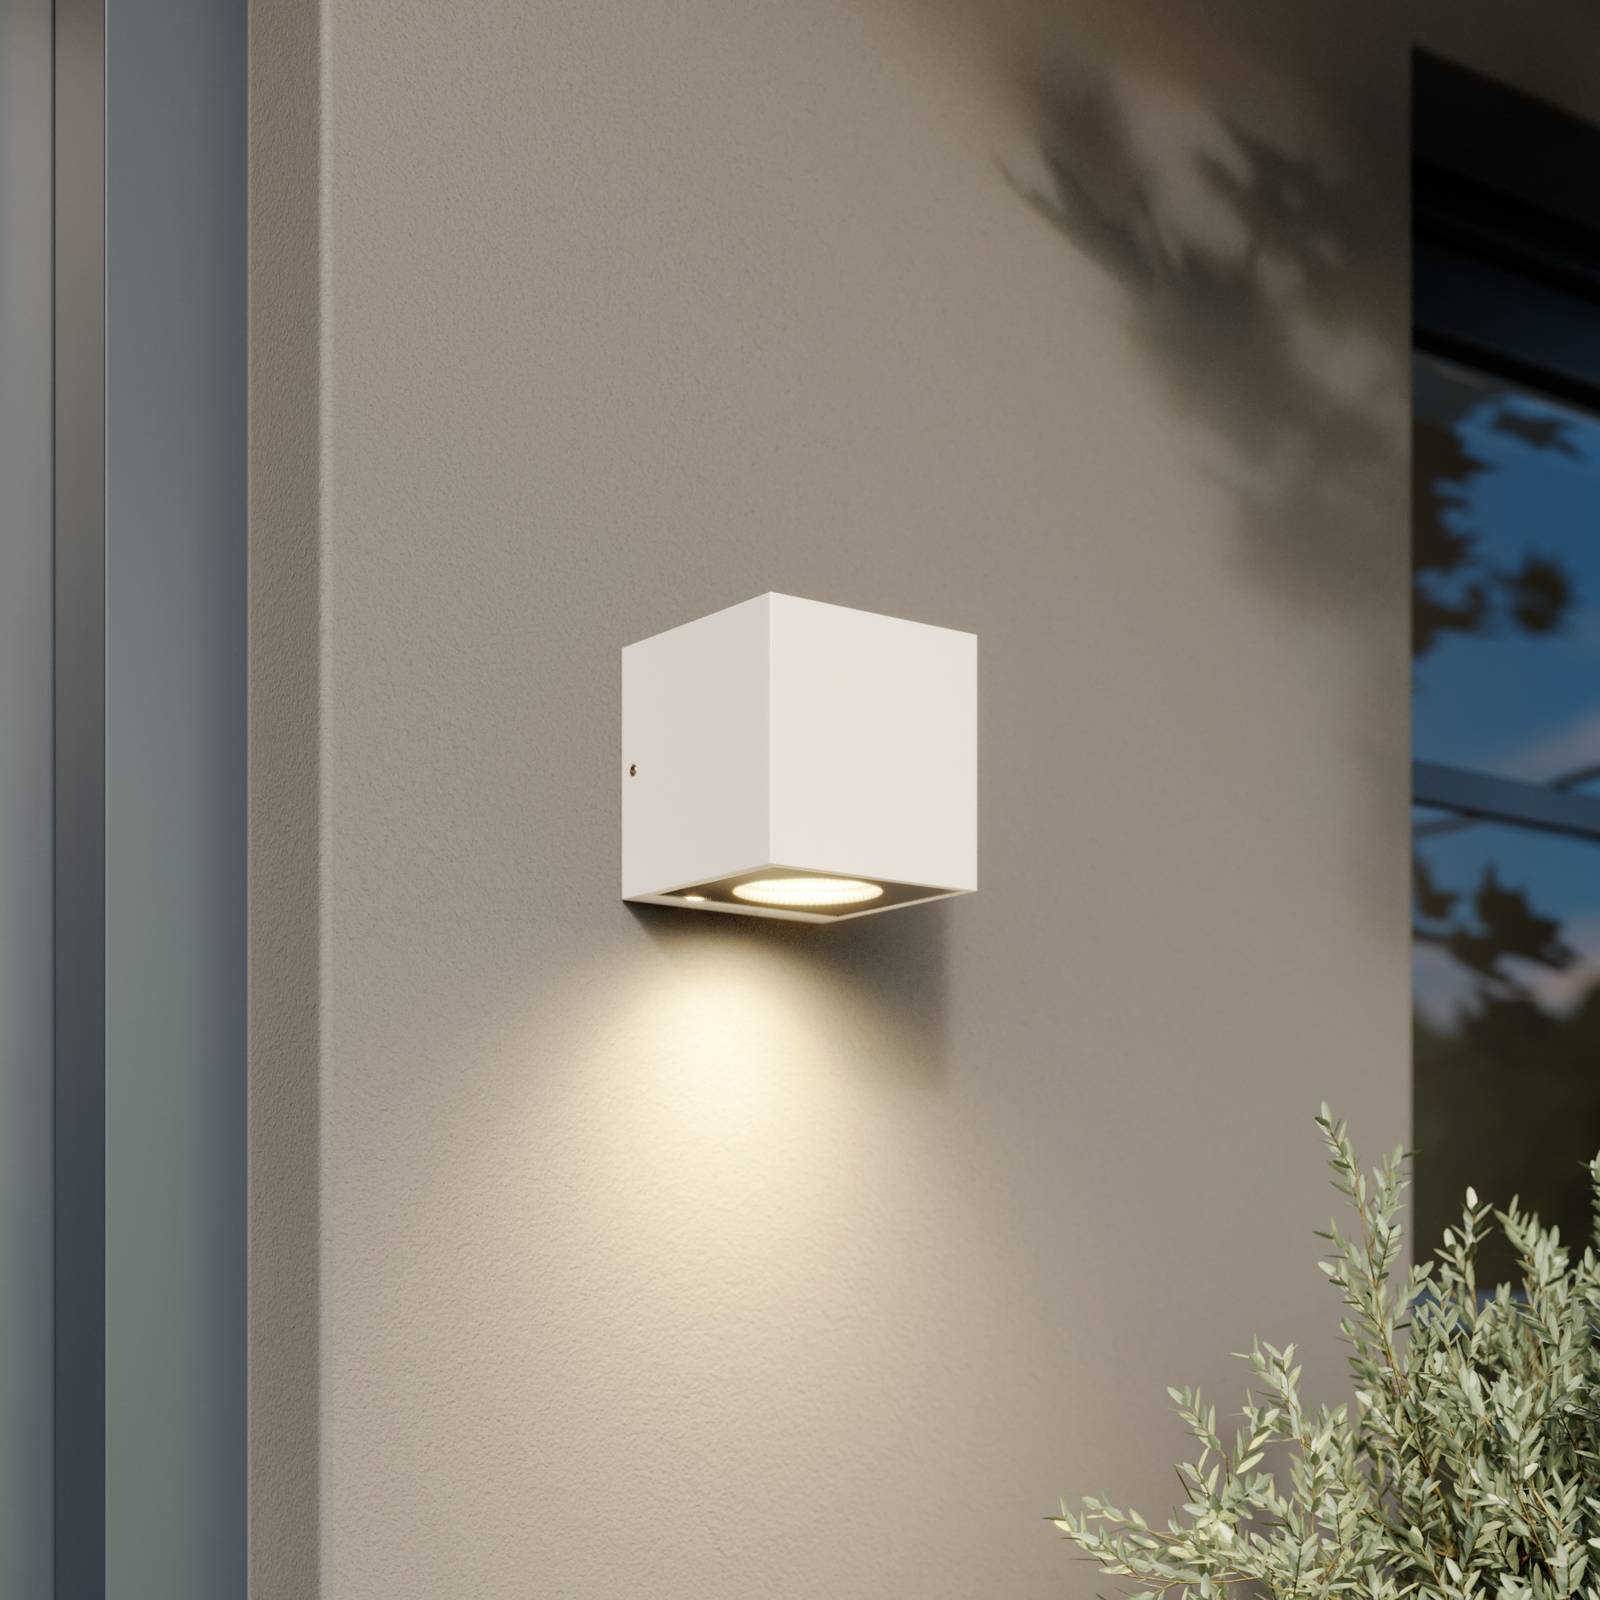 Arcchio Arcchio Tassnim LED venkovní nástěnné svítidlo bílé 1-light.